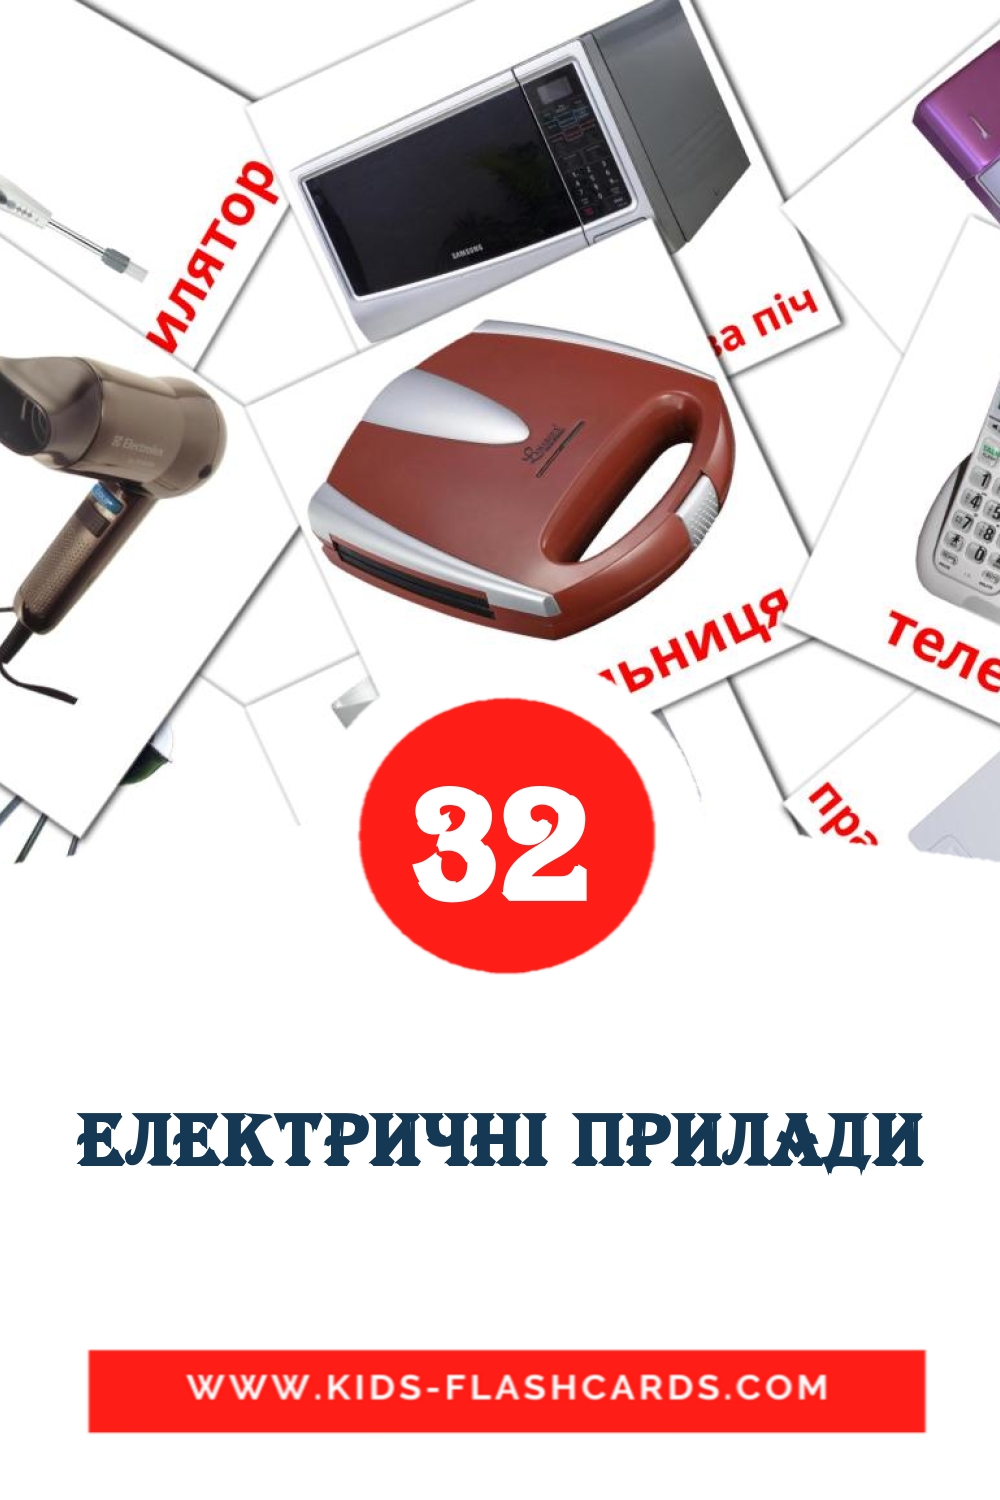 32 Електричні прилади Picture Cards for Kindergarden in ukrainian